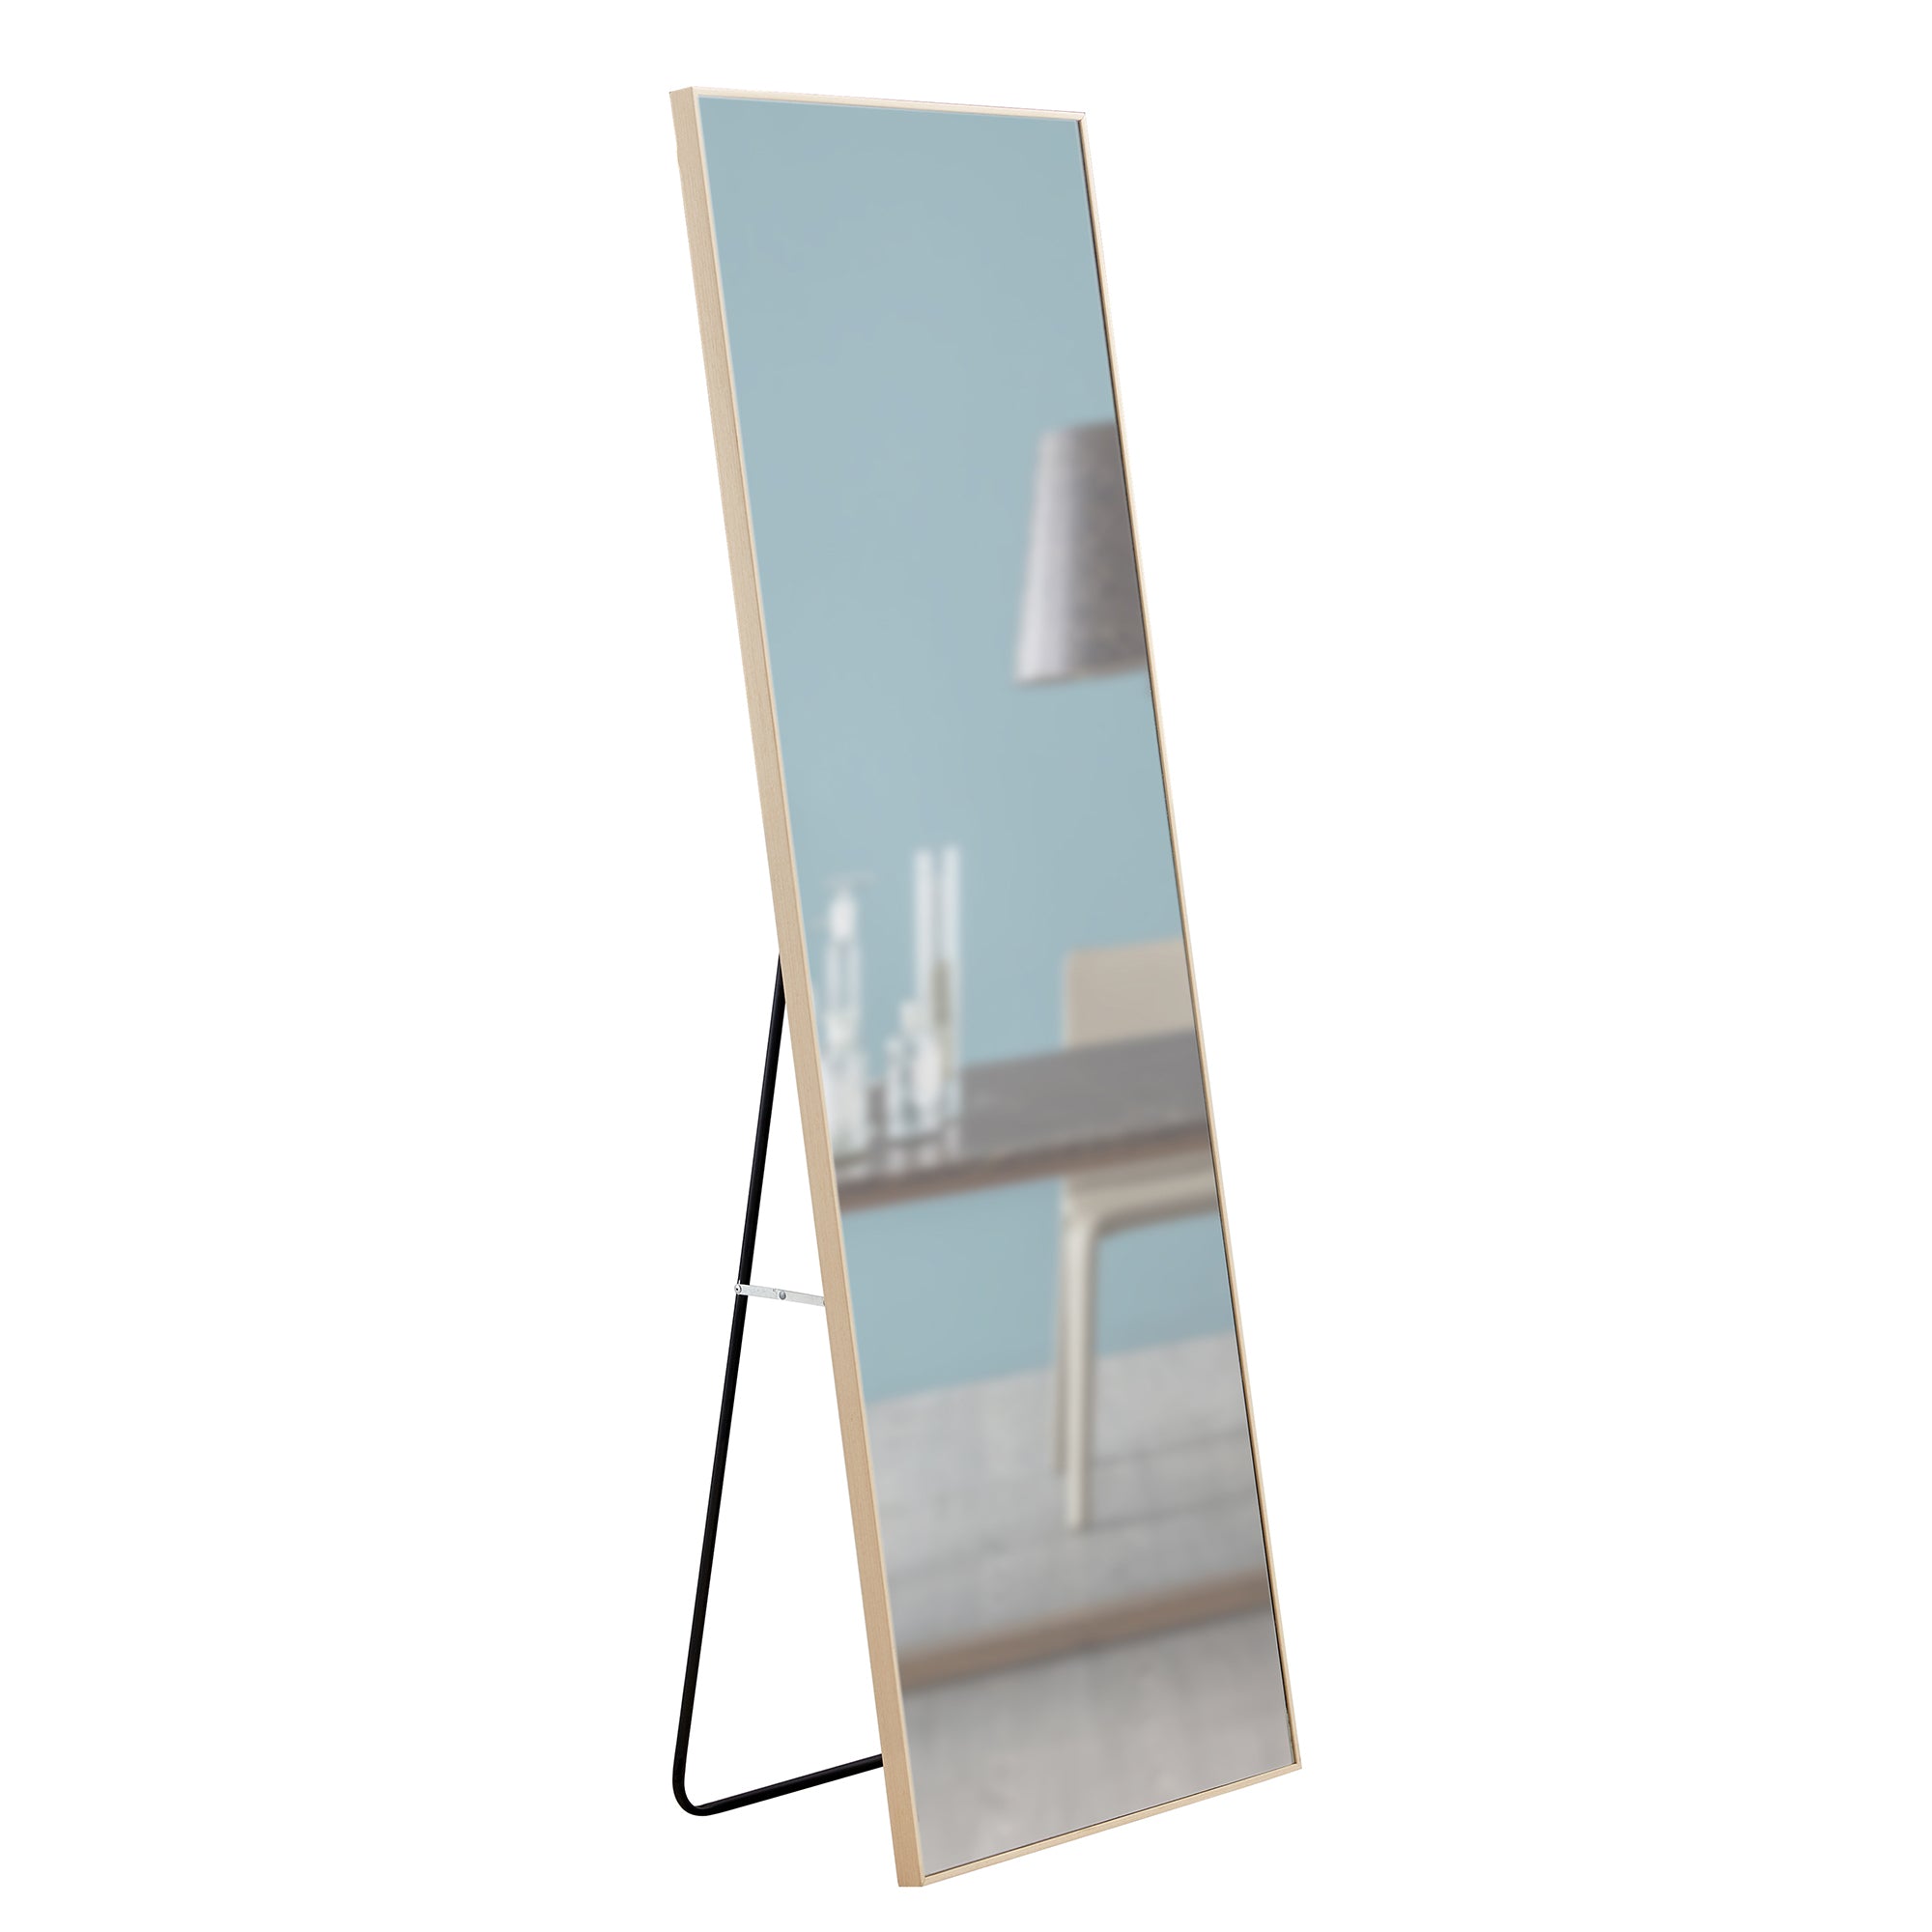 65" X 23" Light Oak Standing Floor Mirror